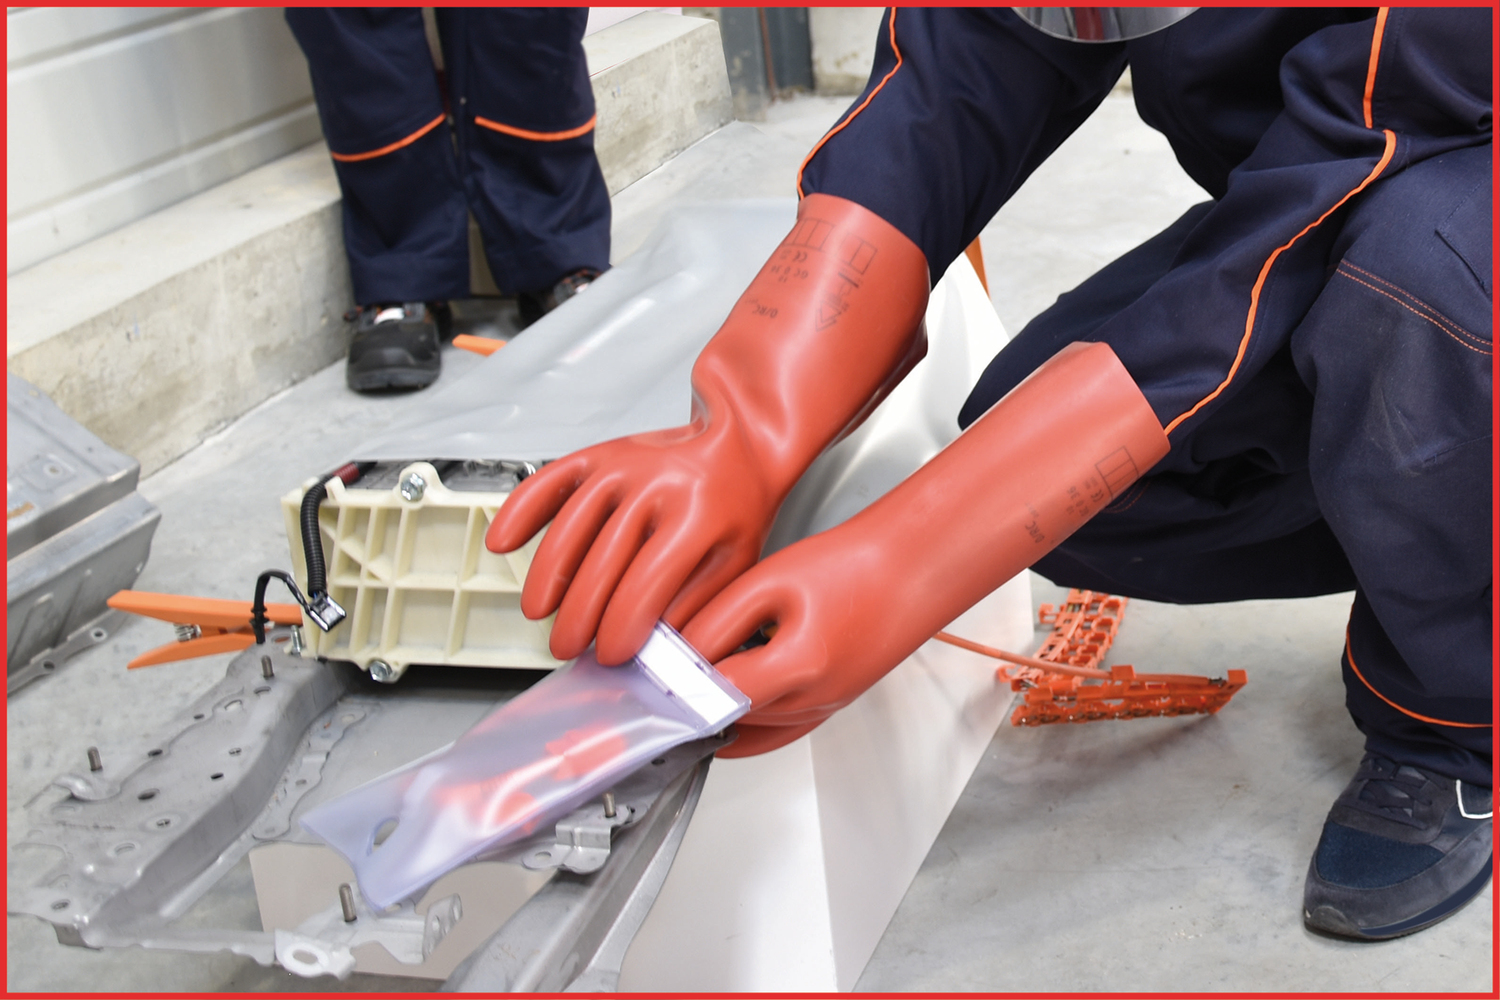 Elektriker-Schutzhandschuh mit mechanischen und thermischen Schutz, Größe 10, Klasse 2, rot